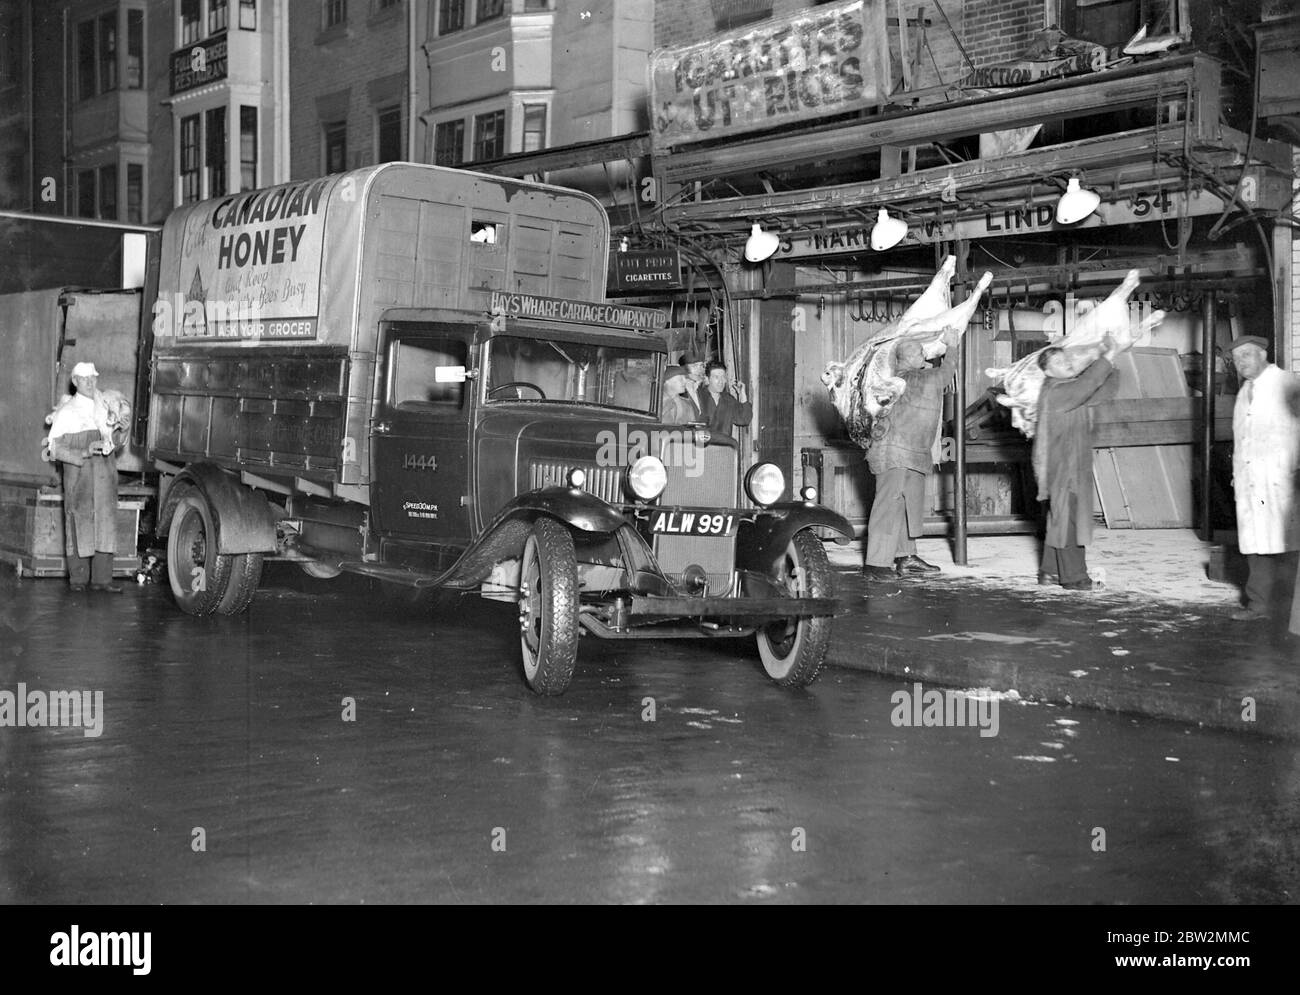 Bedford à l'extérieur d'un marché juif de viande. 29 septembre 1934 Banque D'Images